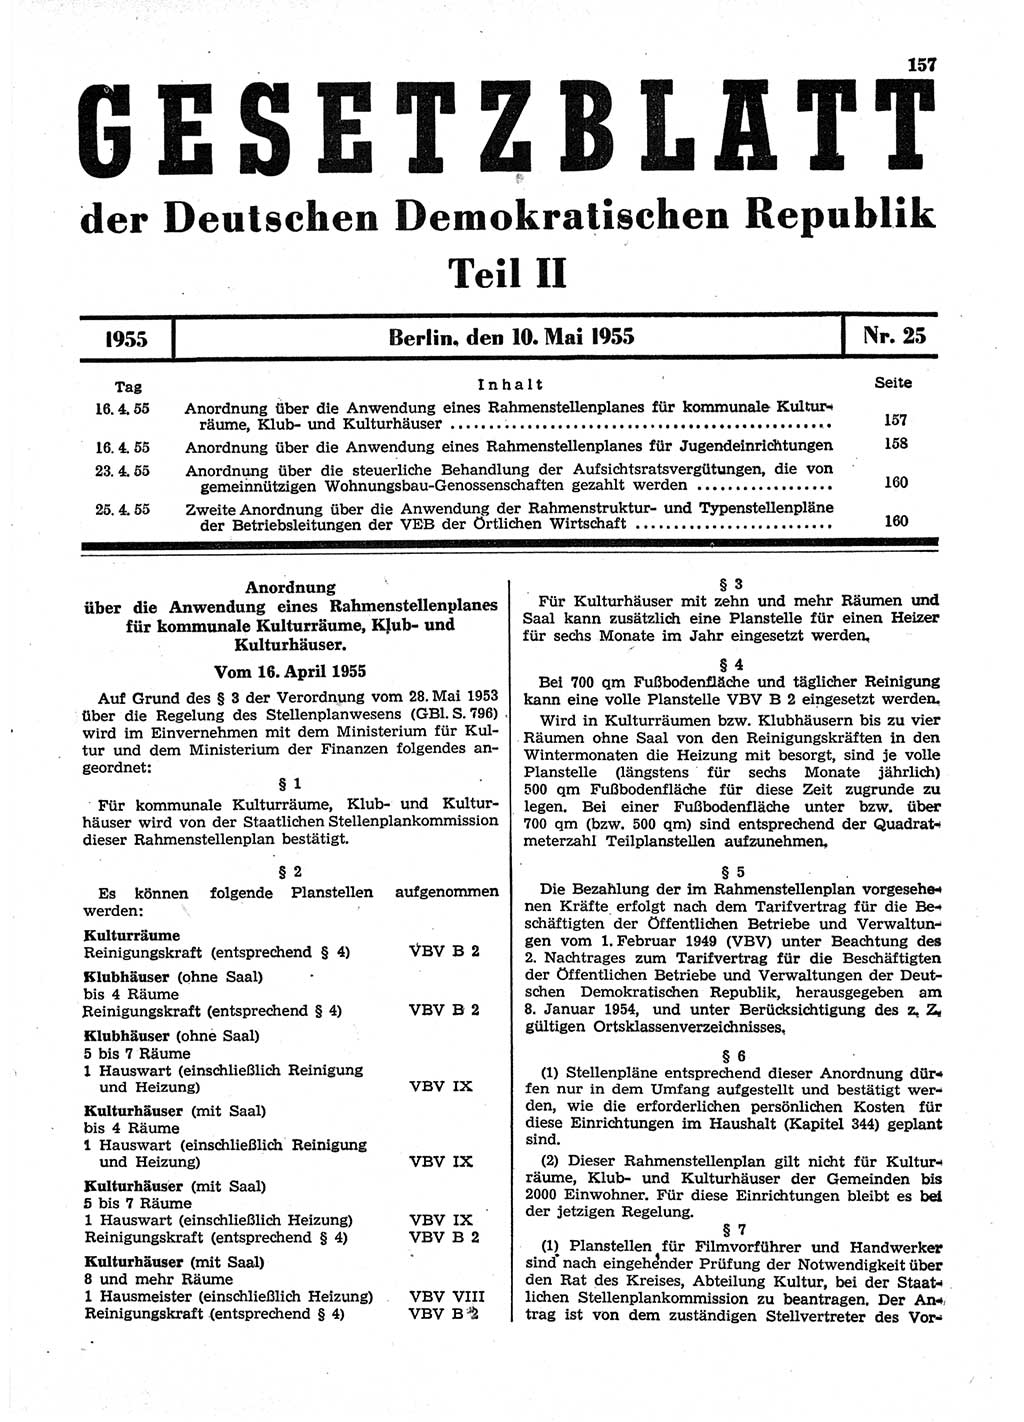 Gesetzblatt (GBl.) der Deutschen Demokratischen Republik (DDR) Teil ⅠⅠ 1955, Seite 157 (GBl. DDR ⅠⅠ 1955, S. 157)